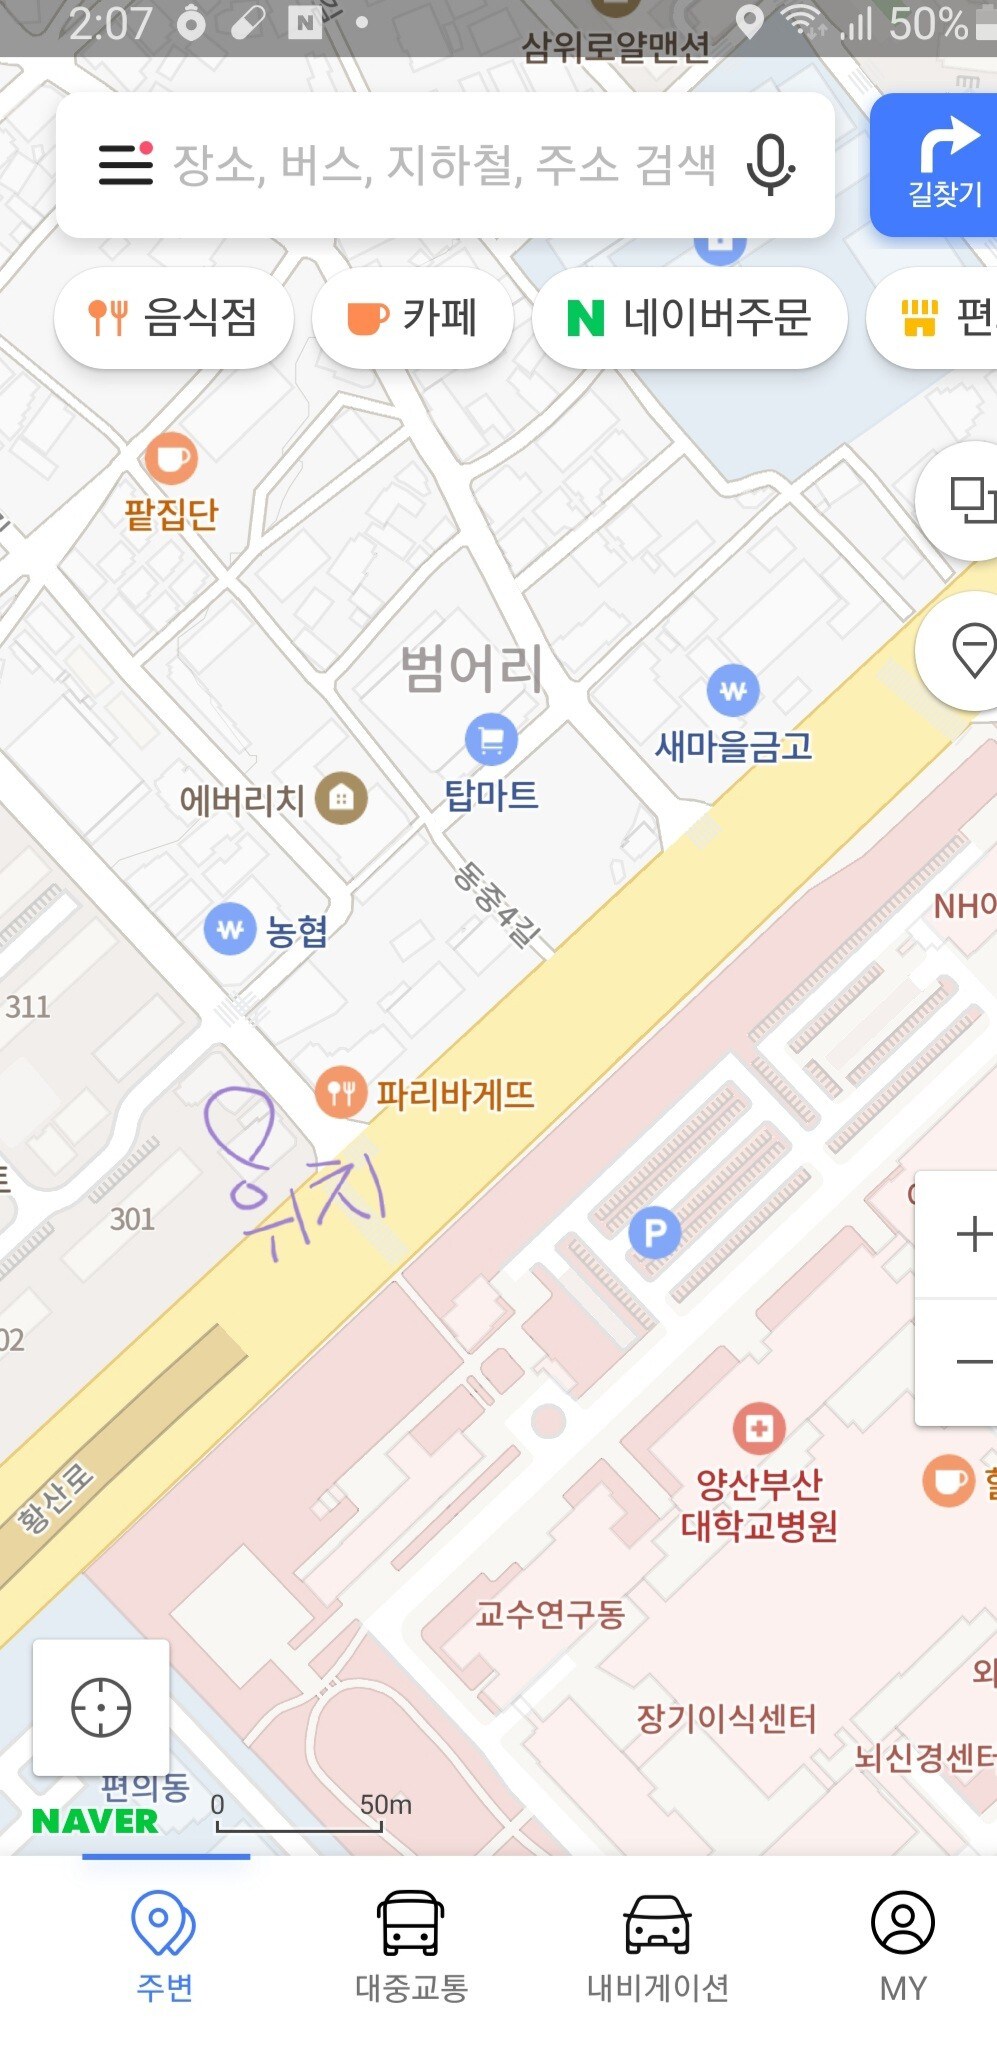 距离阳山釜山大学医院仅1分钟路程，
距离首尔家庭15分钟。练习。商务差旅。住宿。电话-折扣！